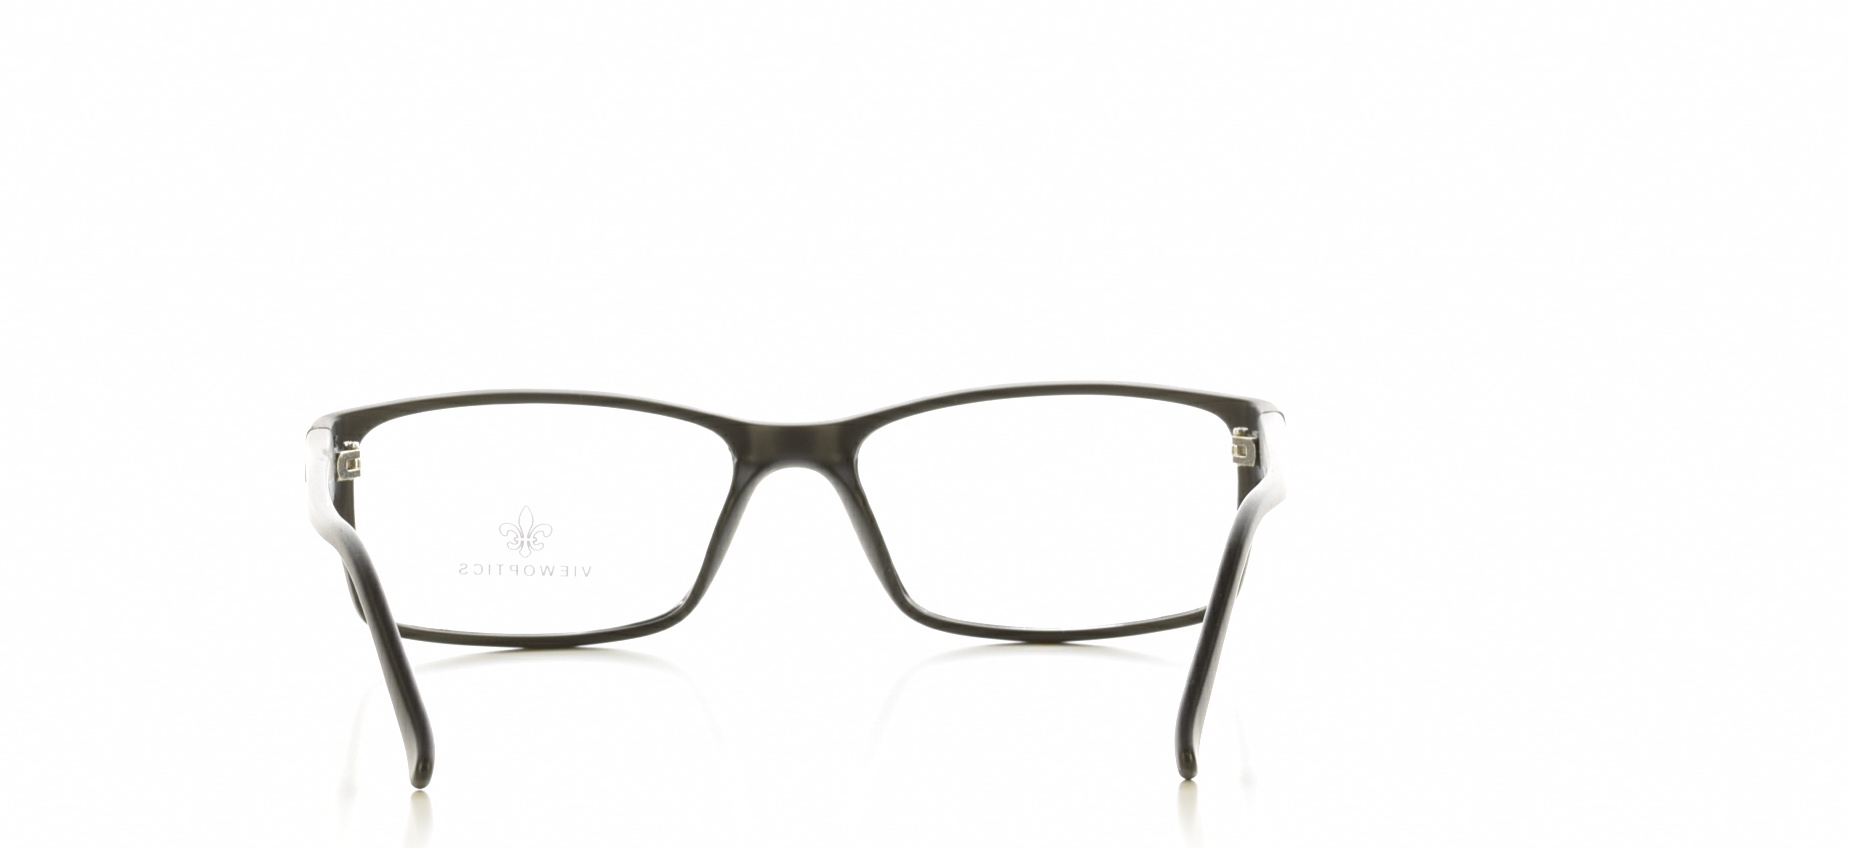 Rama ochelari vedere Viewoptics